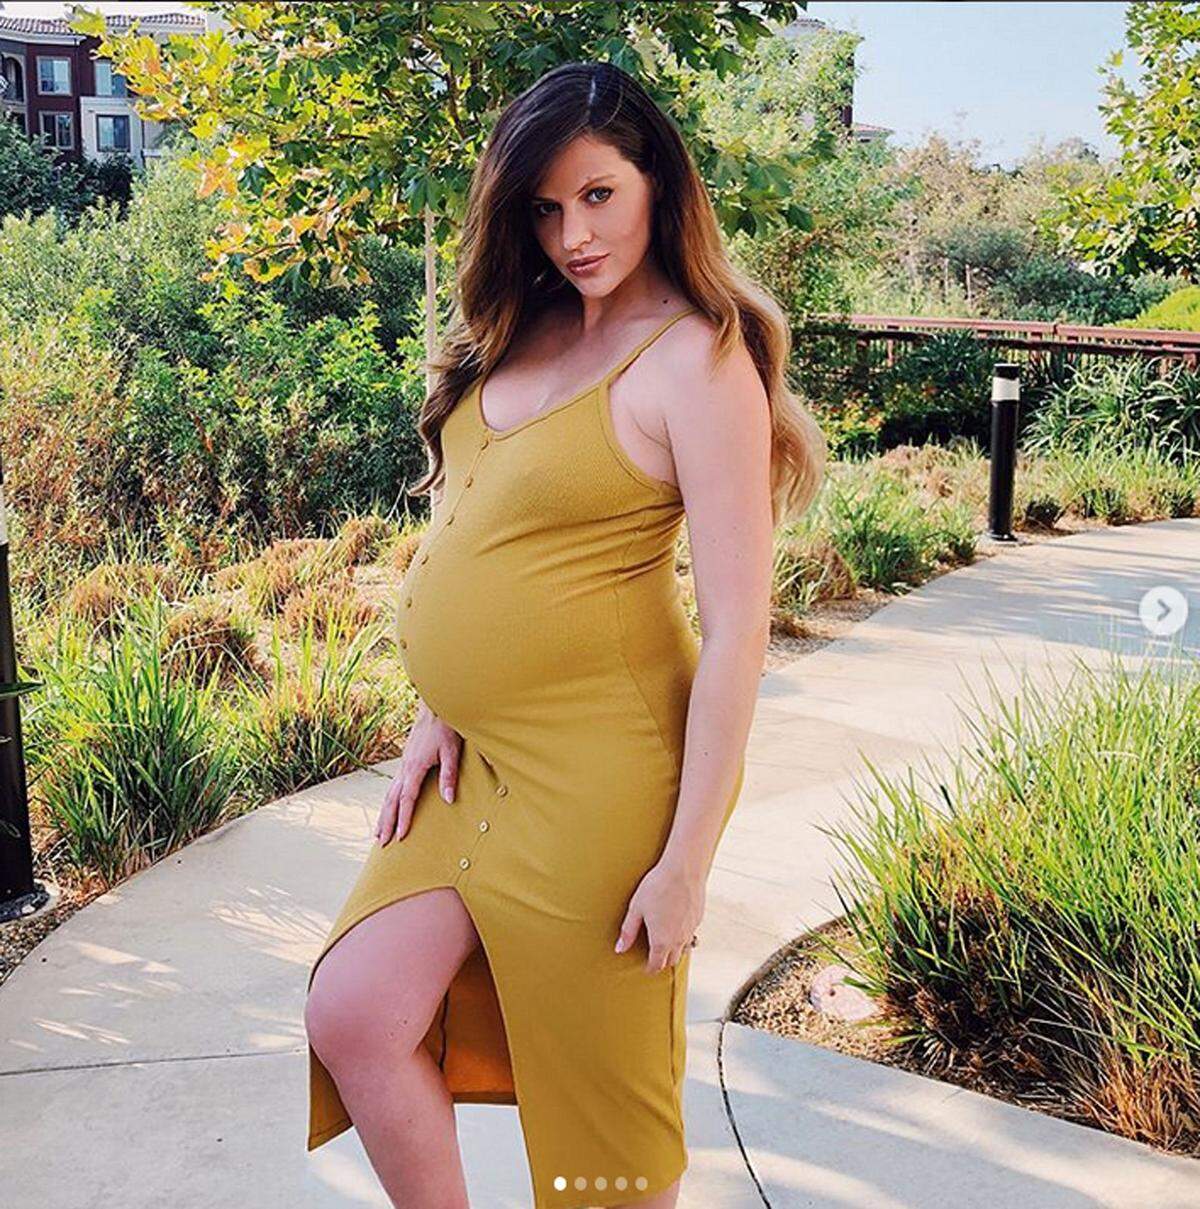 Nur einen Tag nach der Geburt ihrer ersten Tochter ist Model Hana Nitsche (bekannt aus "Germany's Next Topmodel") wieder auf Social Media aktiv. Auf Instagram postete sie jetzt ein Bild, das sie wenige Stunden nach der Entbindung zeigt.